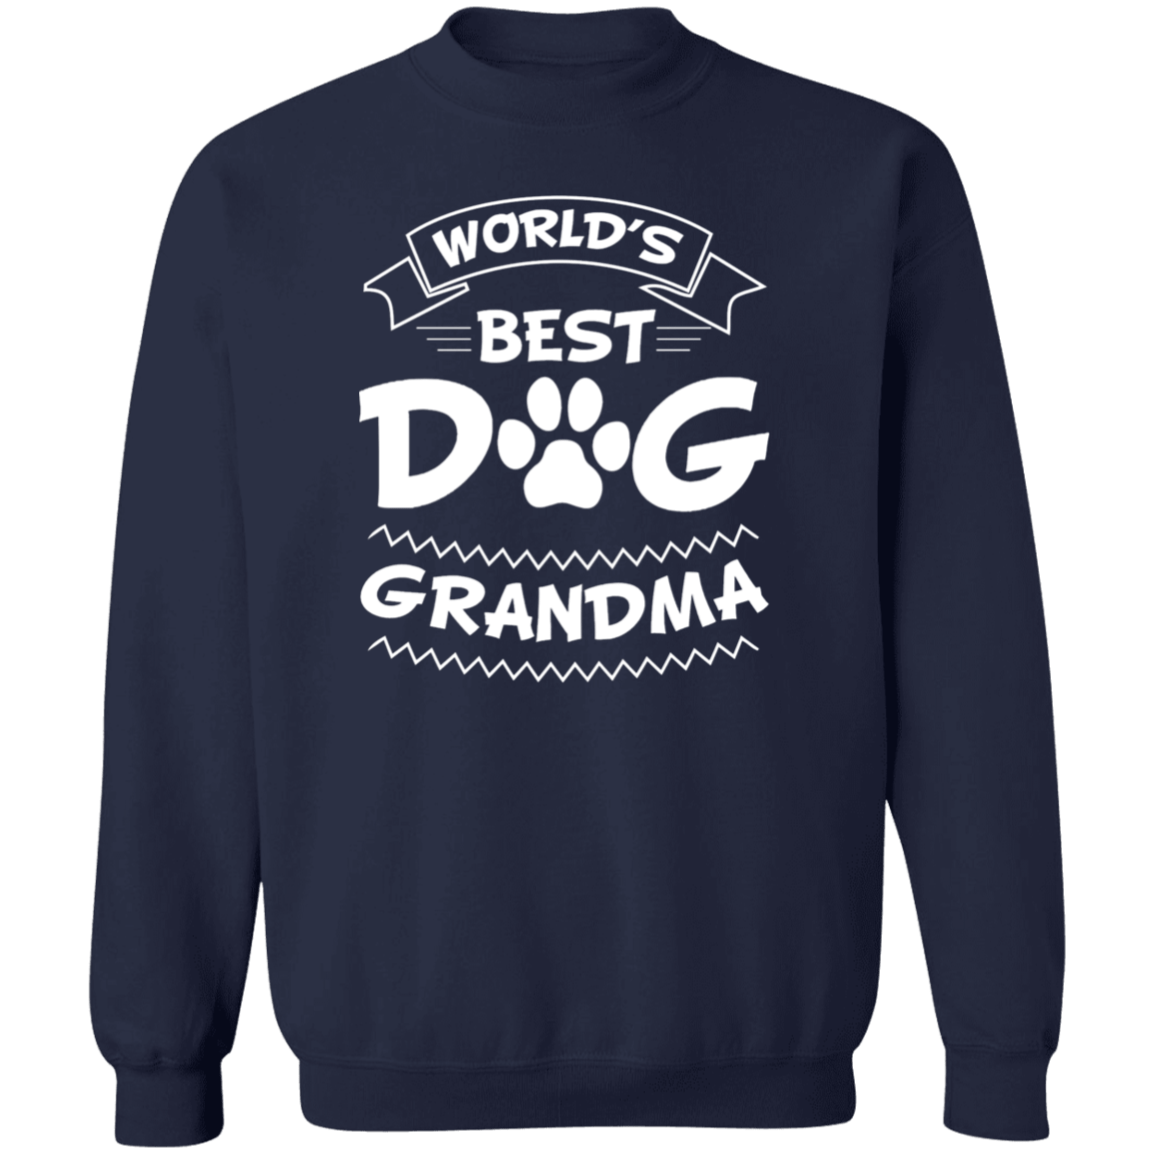 World's Best Dog Grandma - Sweatshirt.